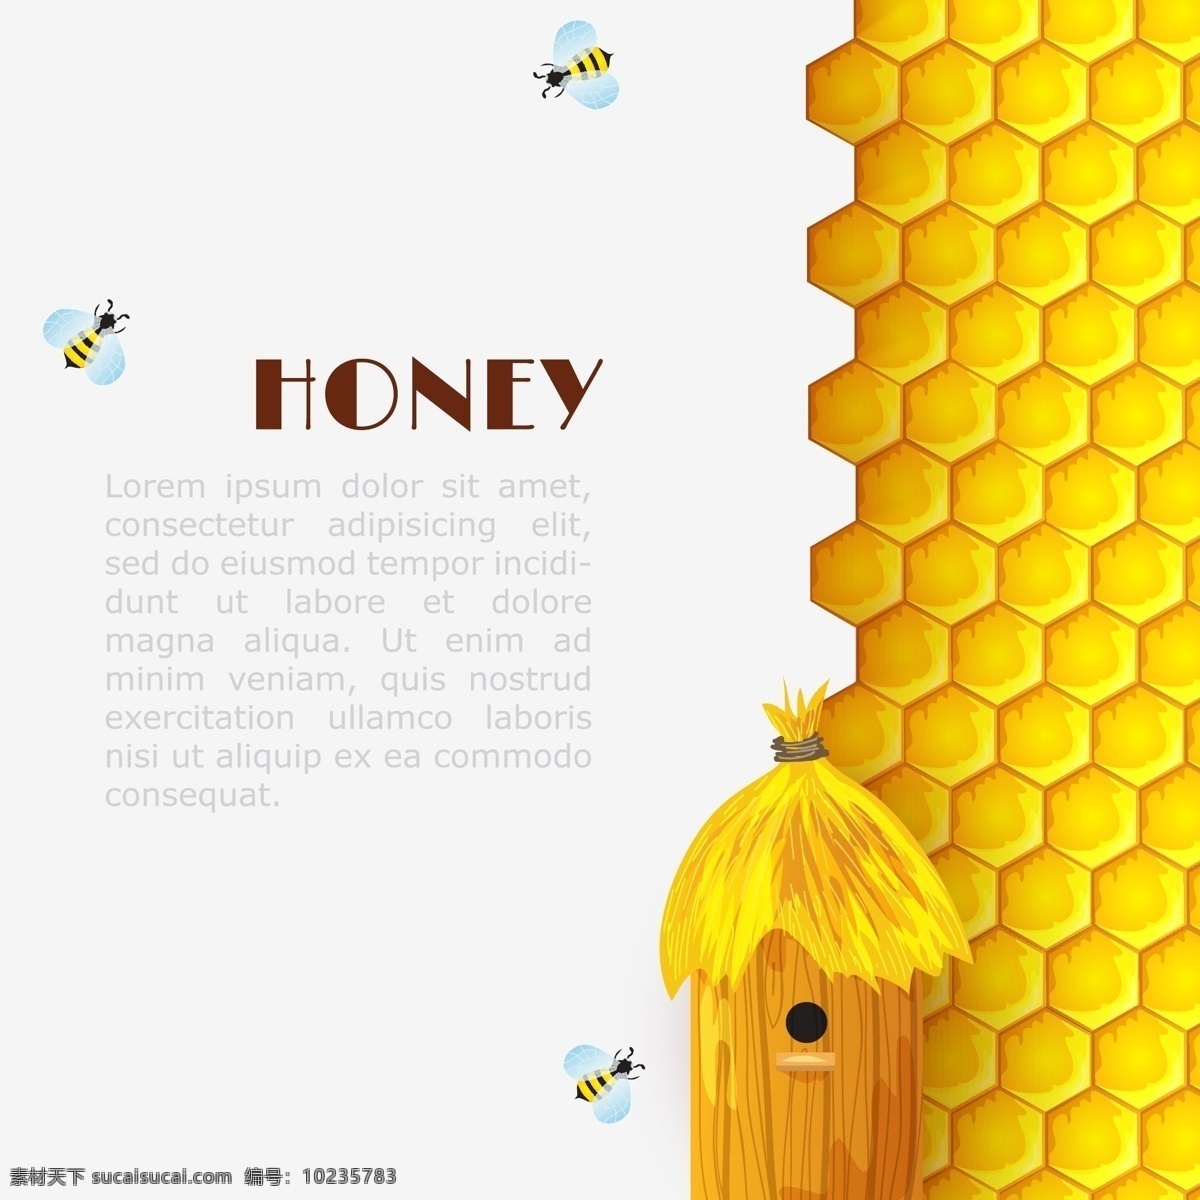 蜂蜜 蜜蜂 蜂巢 蜂窝 海报 封面 美食 花粉 设计素材 底纹边框 背景底纹